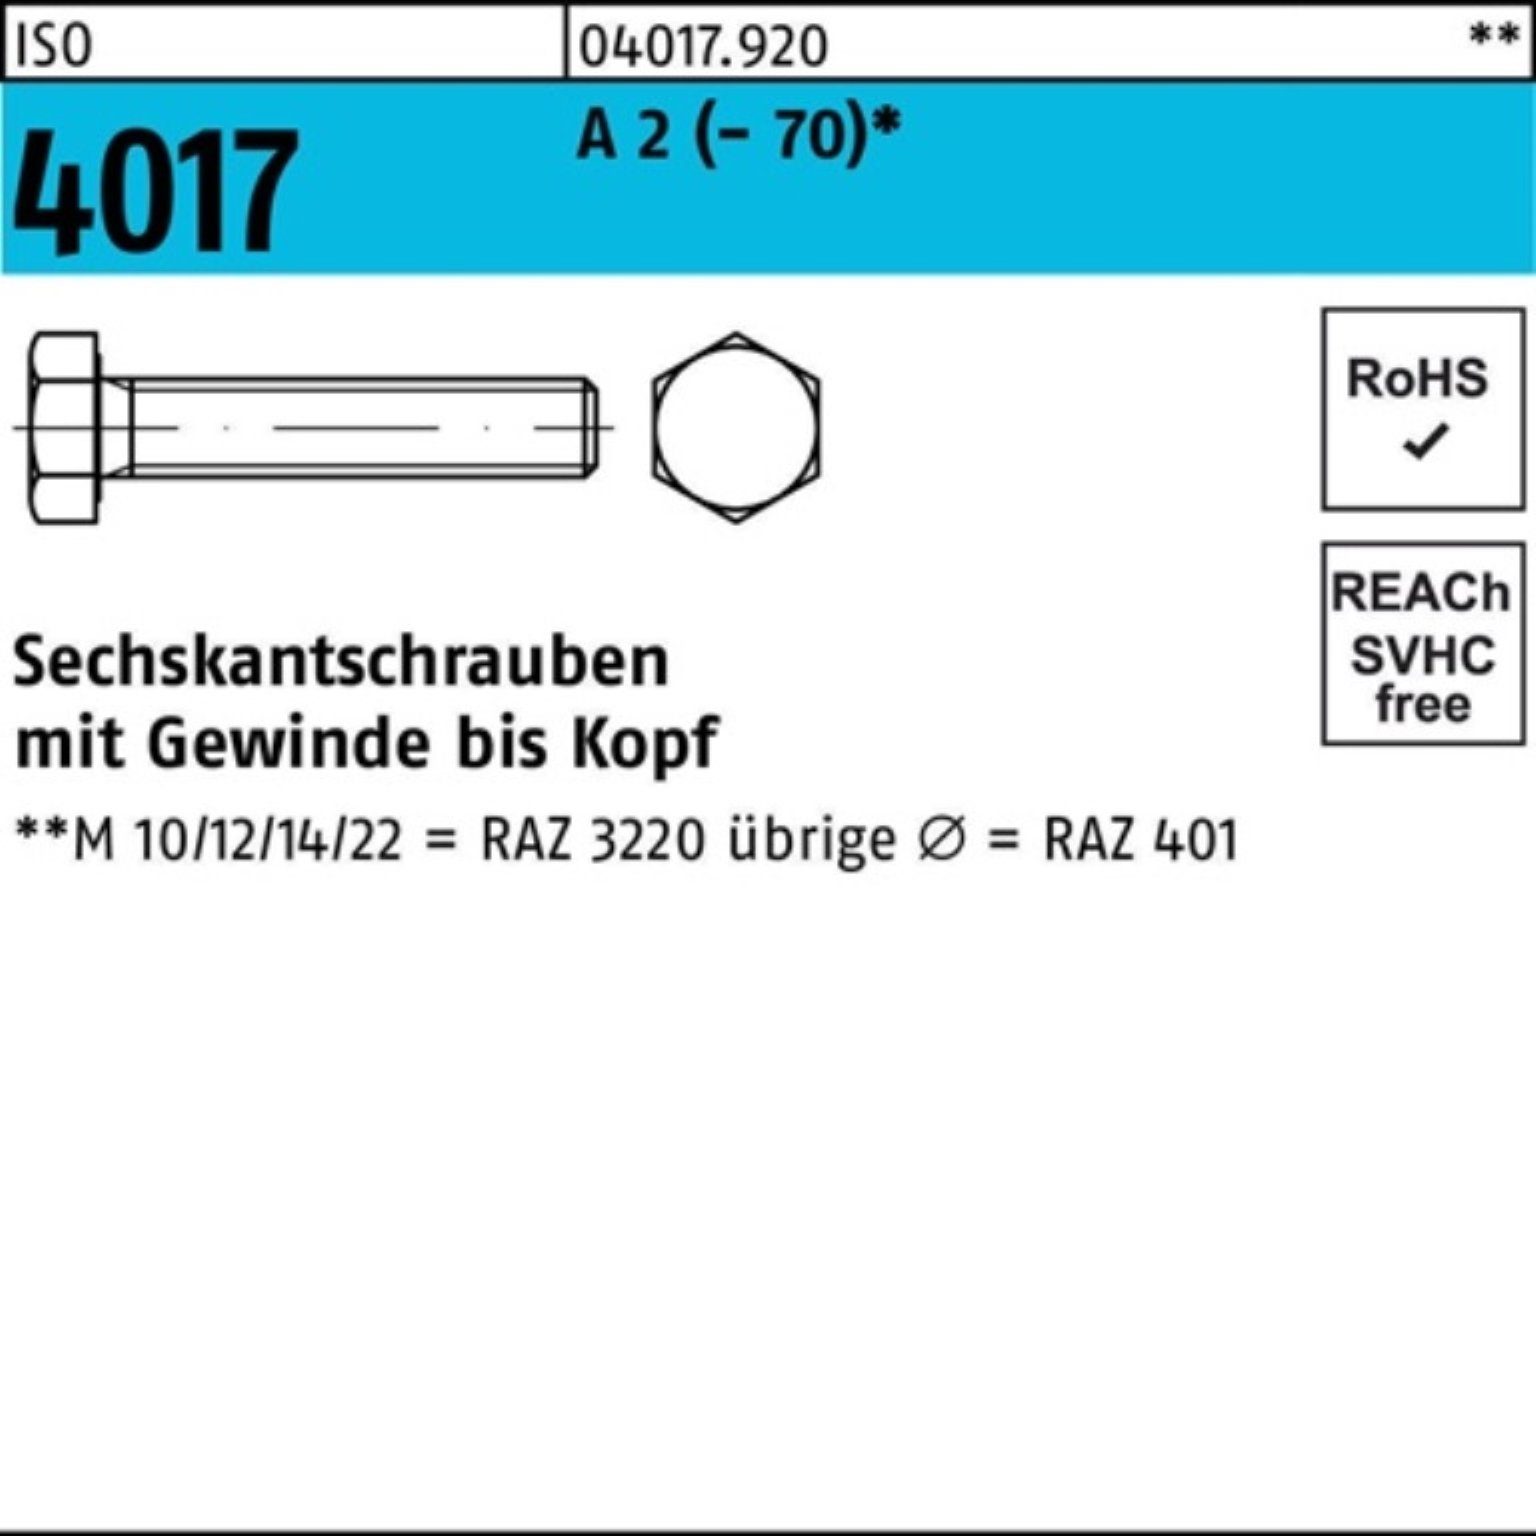 VG Sechskantschraube 2 A Pack Bufab M20x ISO 55 100er Sechskantschraube 25 Stück 4017 (70)